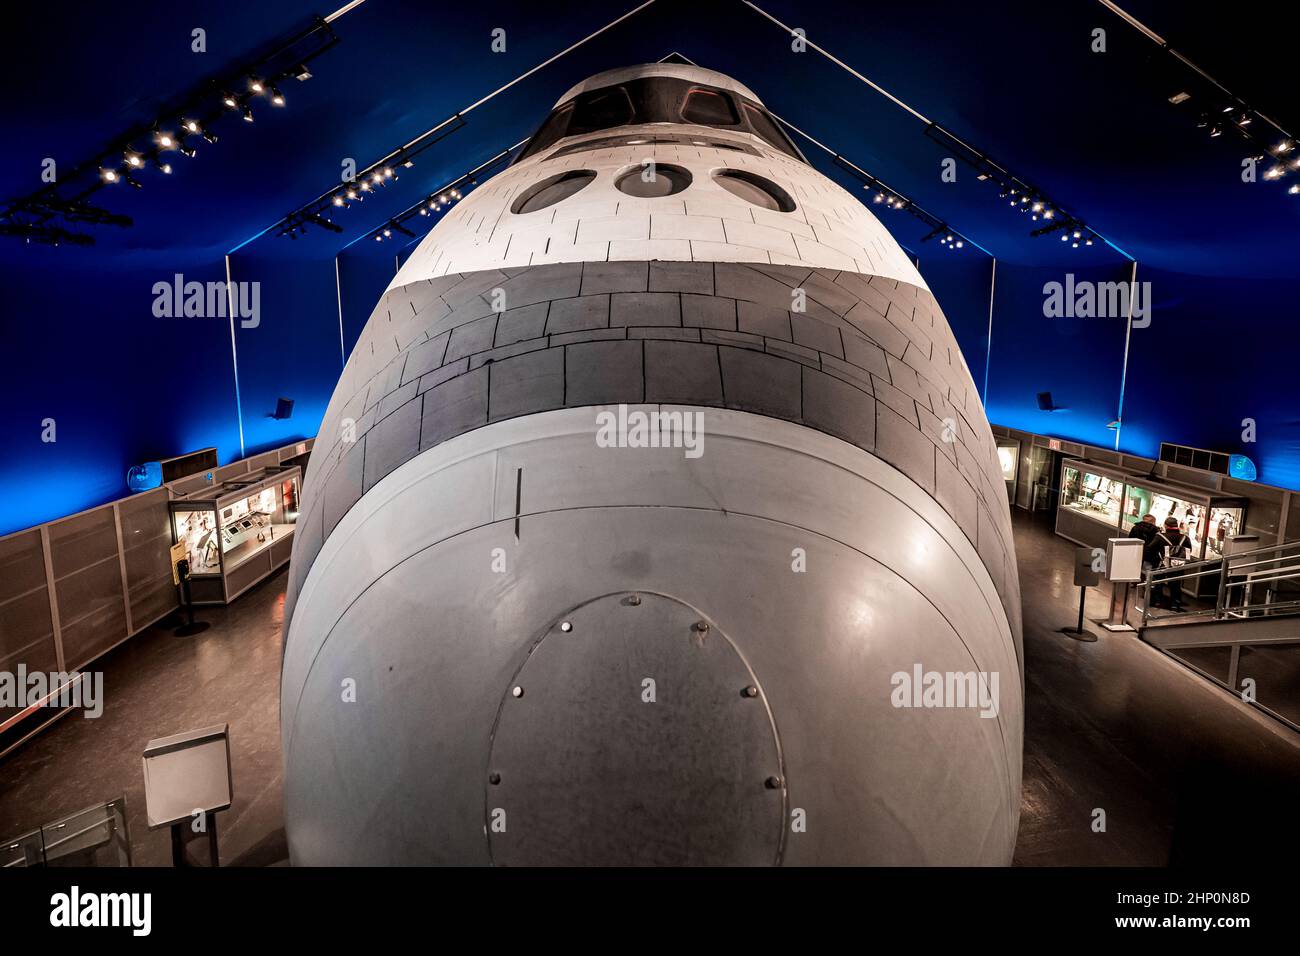 Vue frontale de la navette spatiale Enterprise au pavillon de la navette à bord du USS Intrepid Sea, Air and Space Museum à New York City, NY, États-Unis Banque D'Images